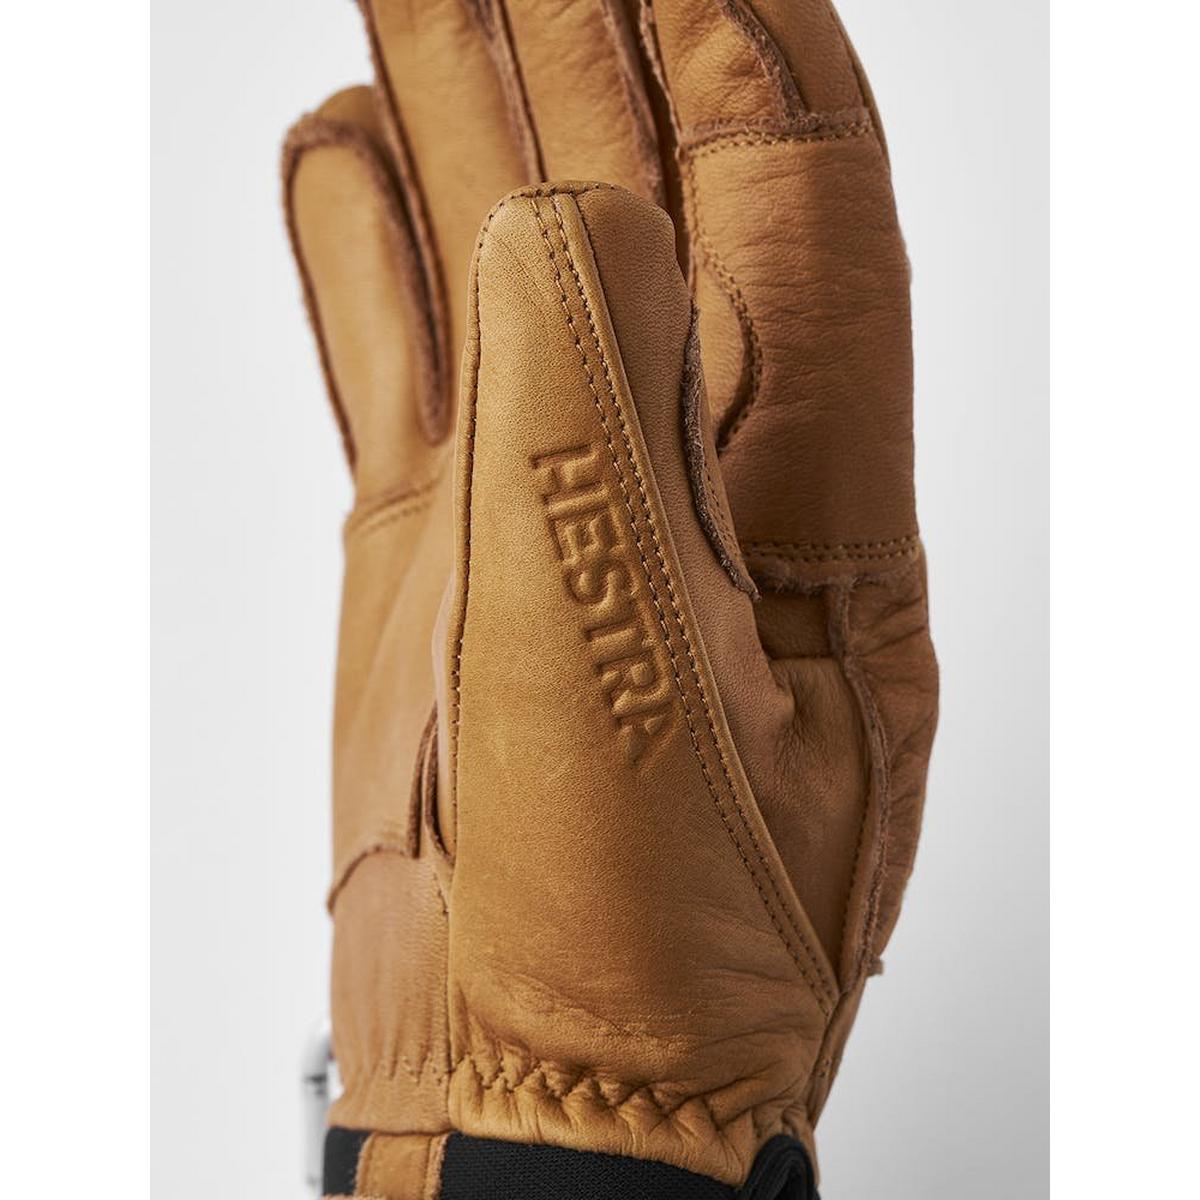 Hestra Men's Hestra Fall Line Glove - Cork